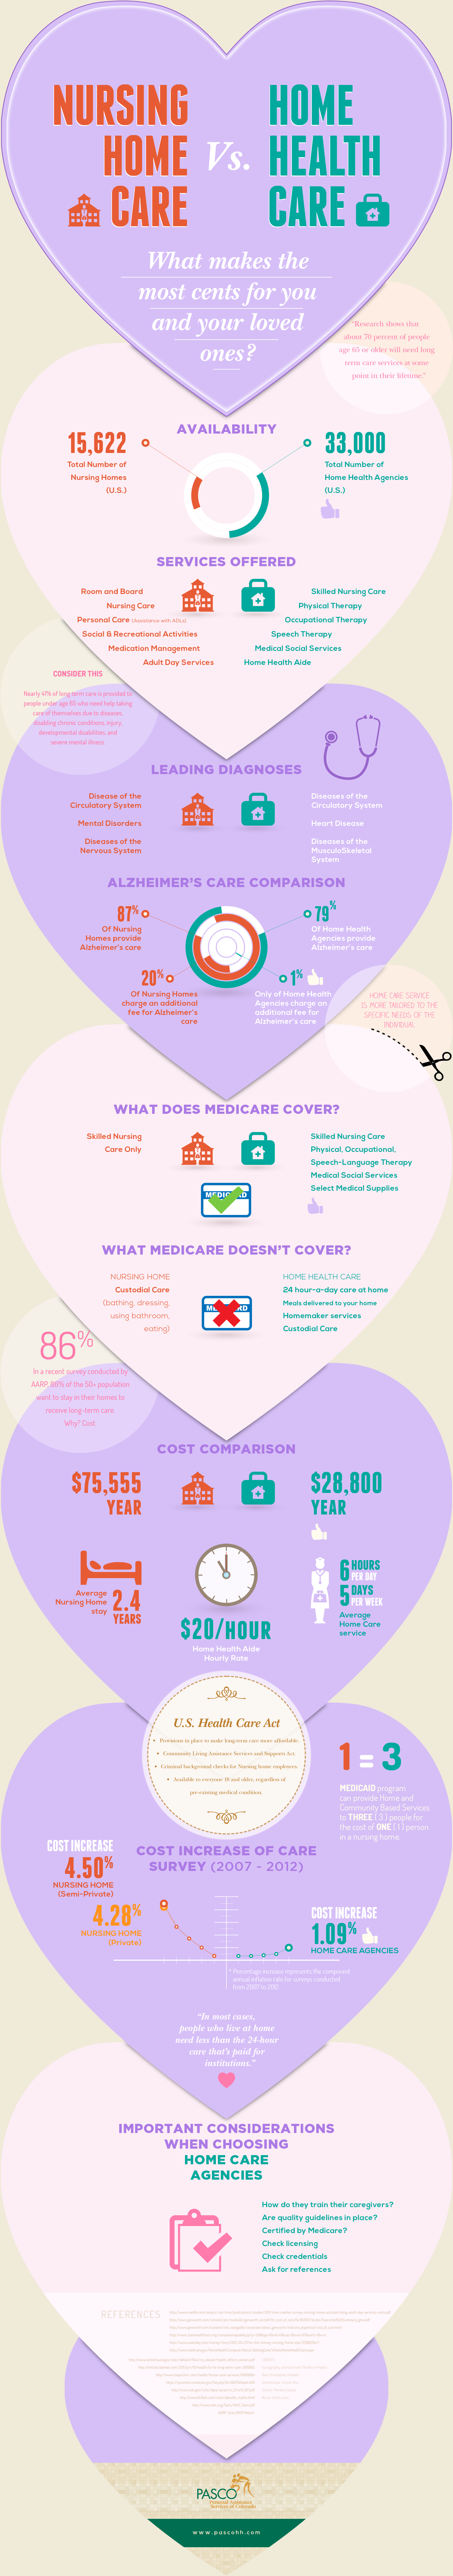 Nursing Home Care vs. Home Health Care